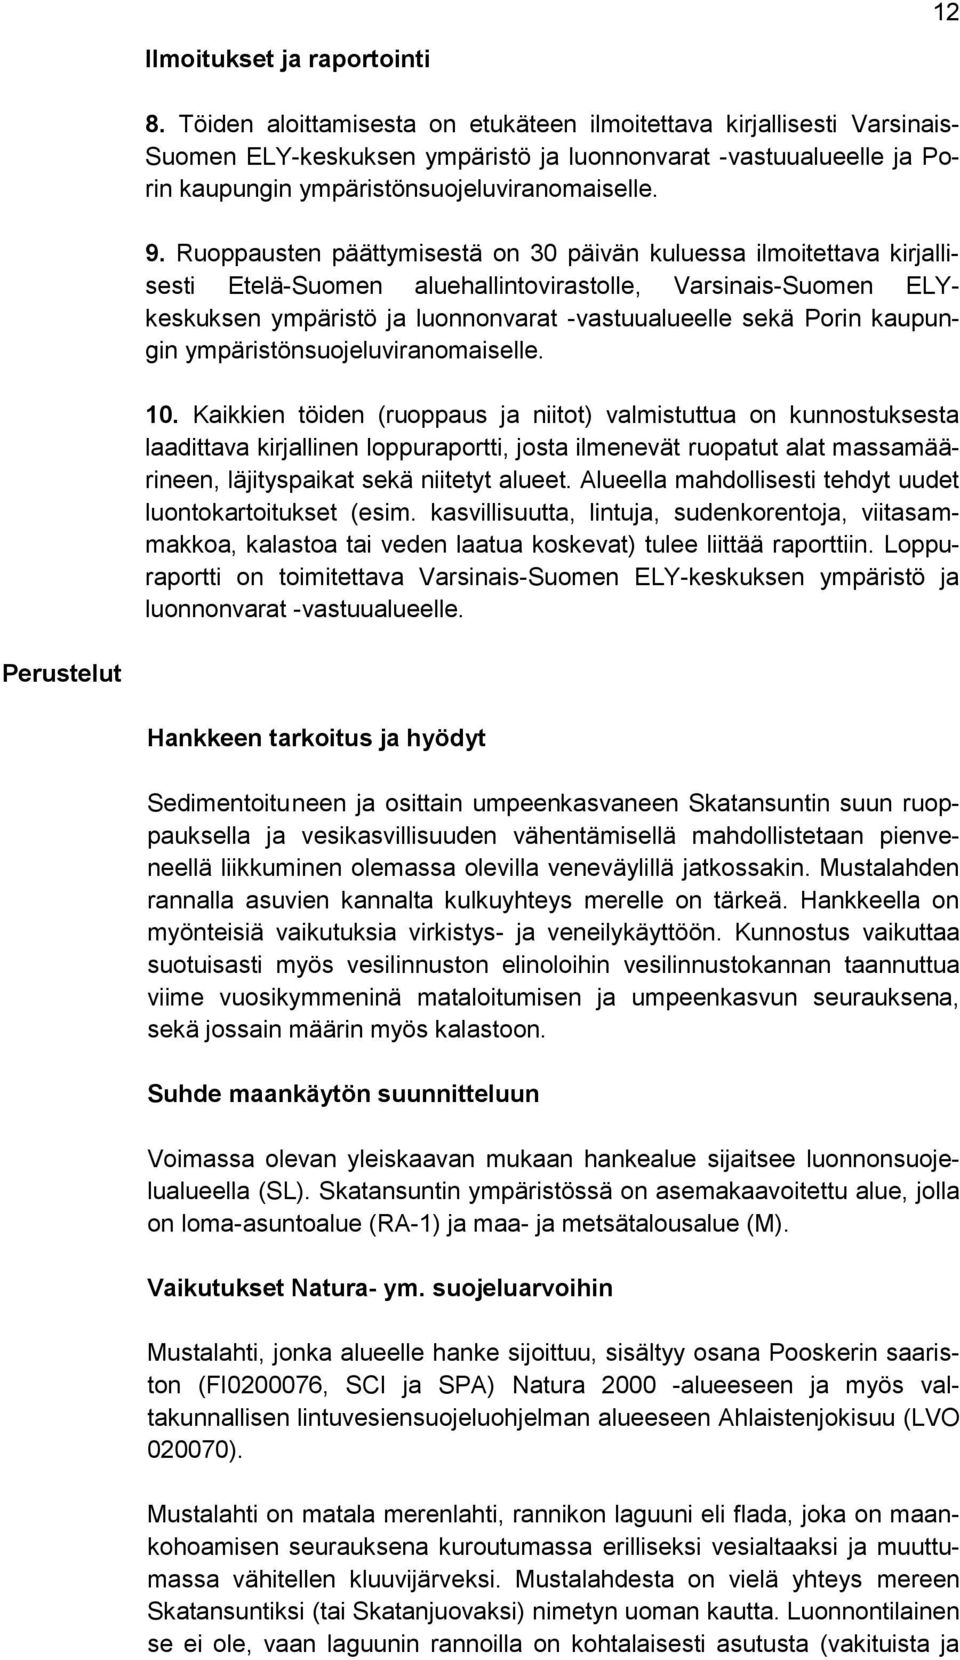 Ruoppausten päättymisestä on 30 päivän kuluessa ilmoitettava kirjallisesti Etelä-Suomen aluehallintovirastolle, Varsinais-Suomen ELYkeskuksen ympäristö ja luonnonvarat -vastuualueelle sekä Porin